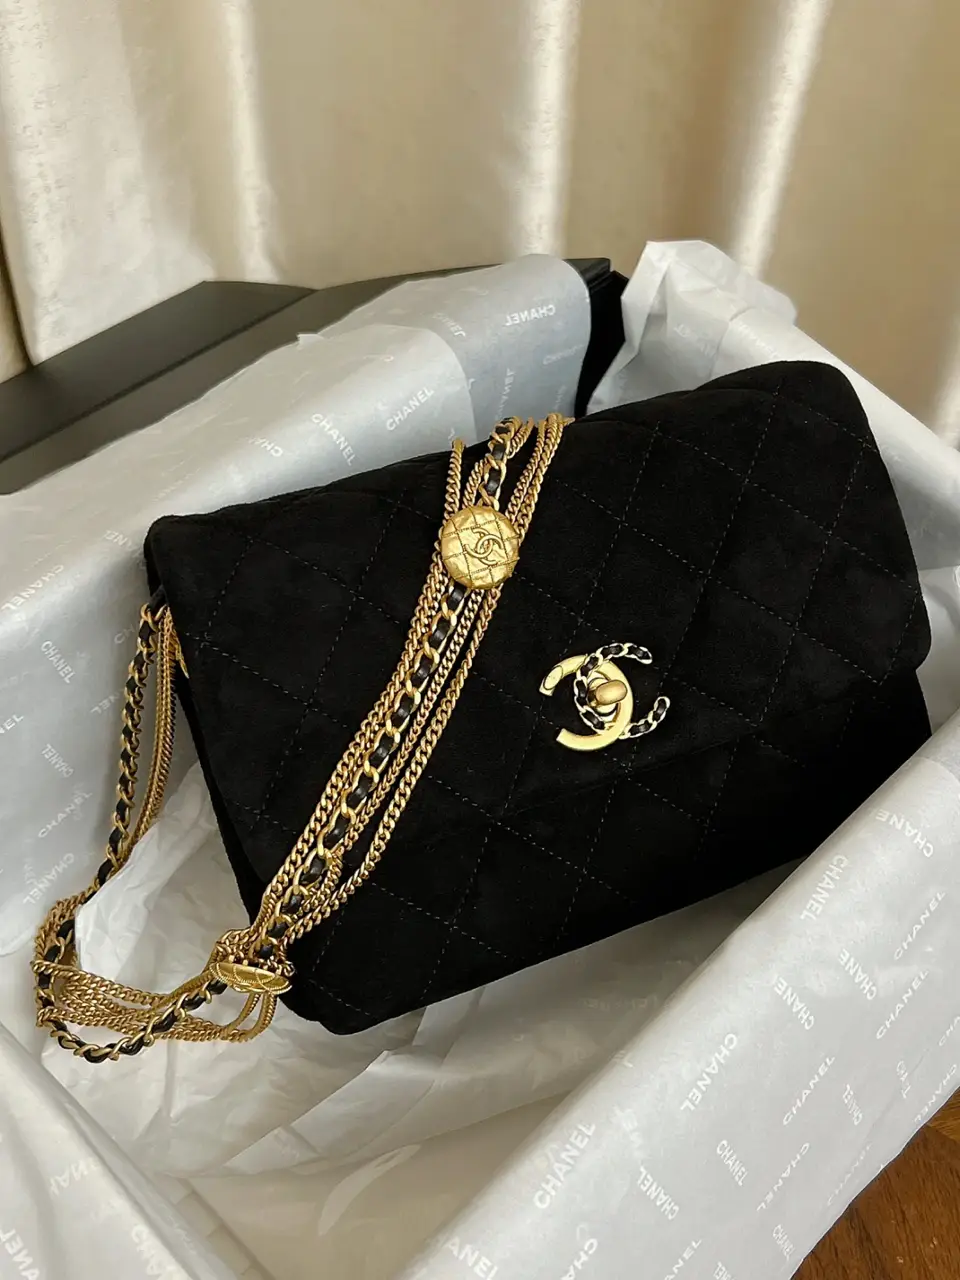 chanel bag black gold